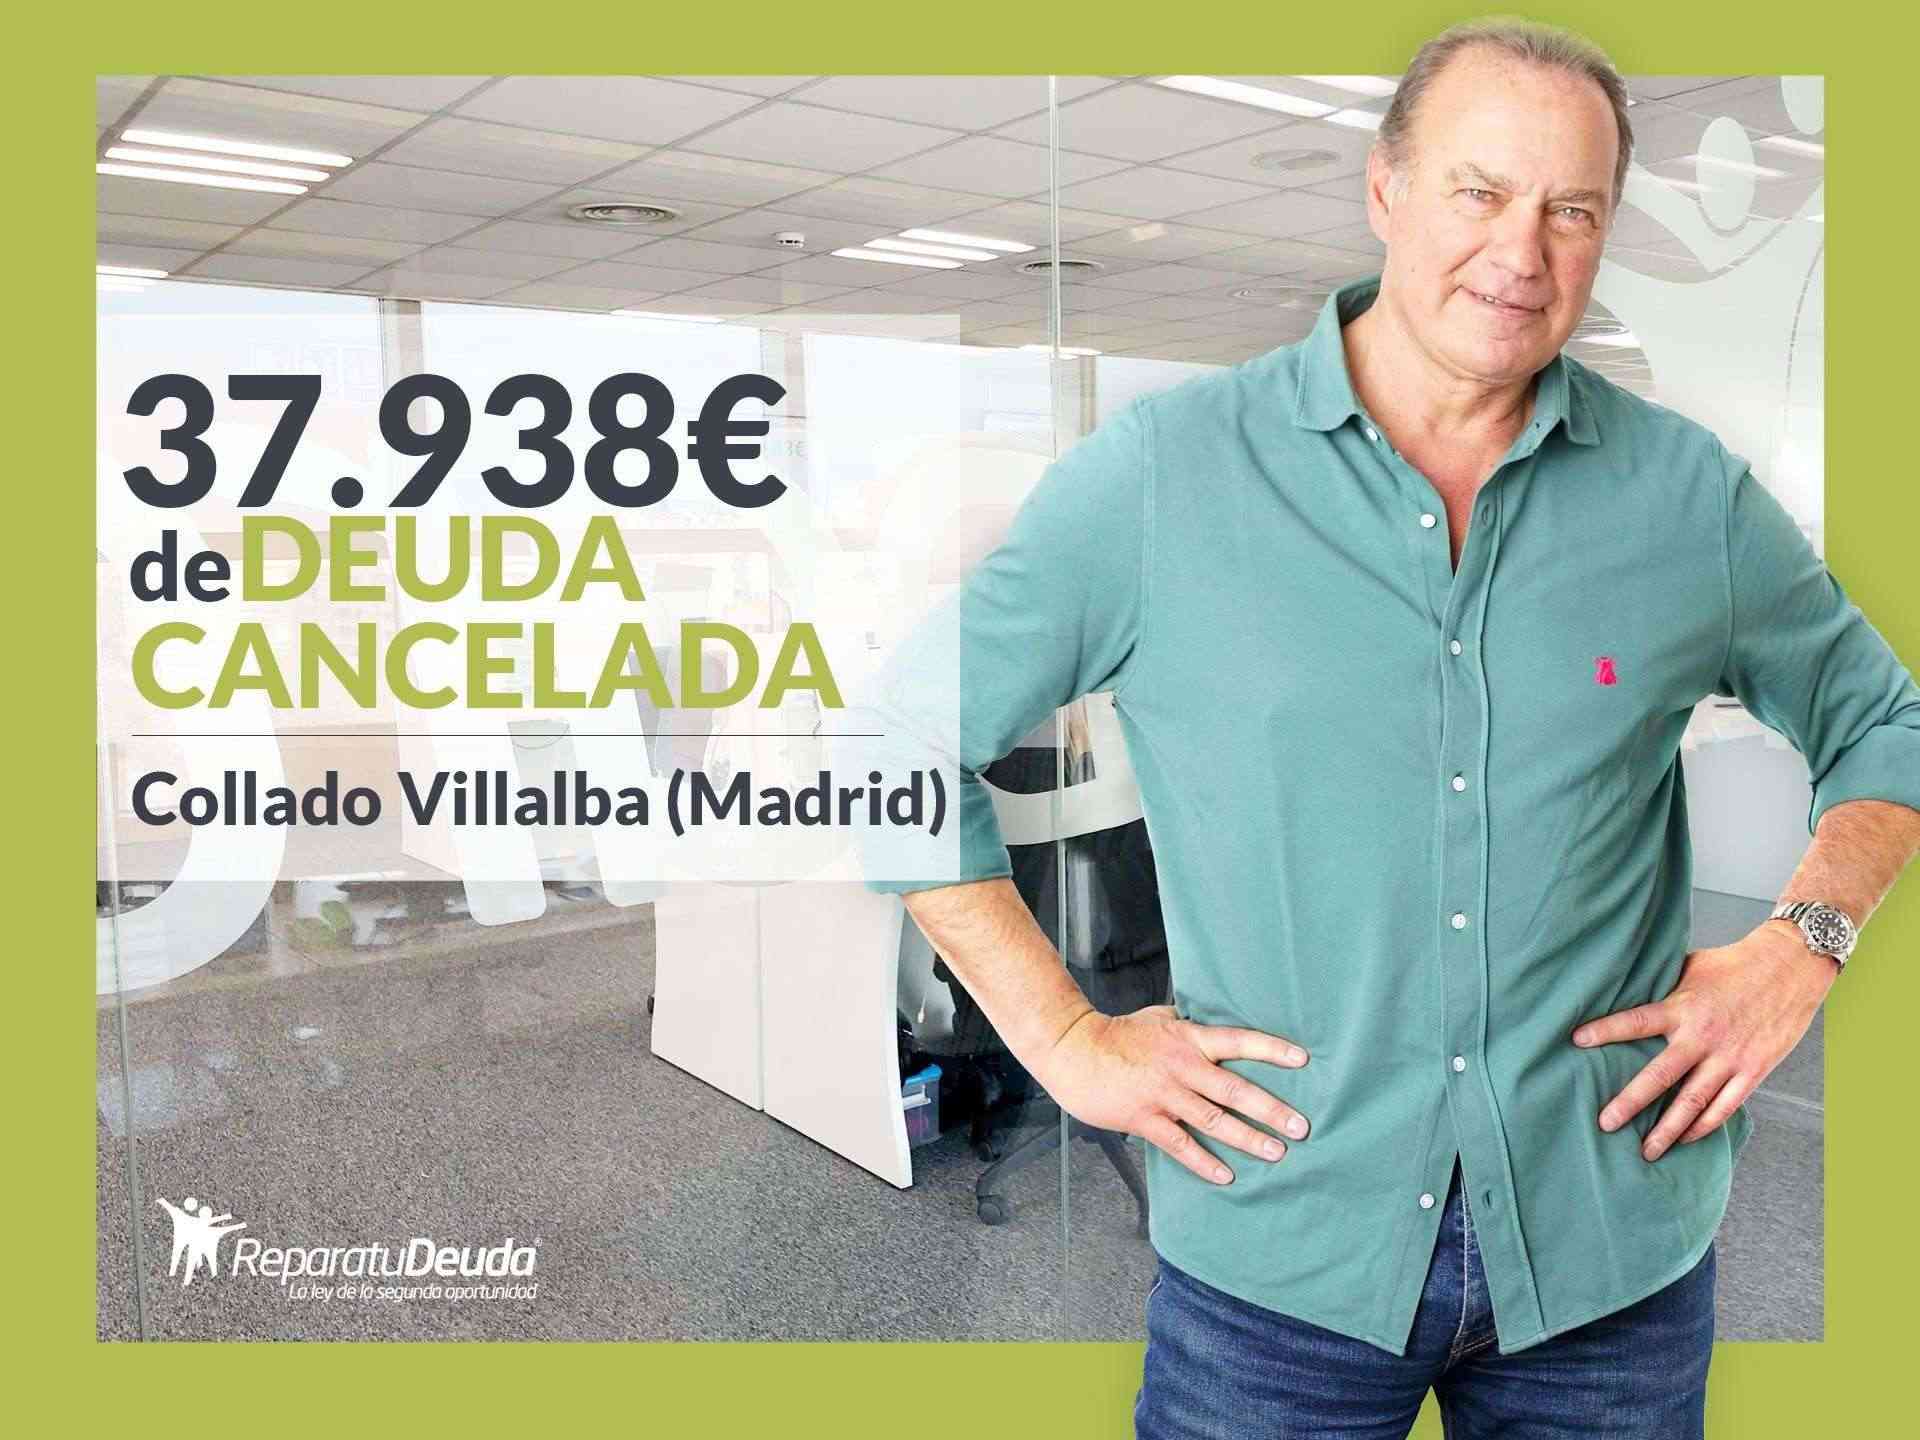 Repara tu Deuda Abogados cancela 37.938 € en Collado Villalba (Madrid) con la Ley de Segunda Oportunidad